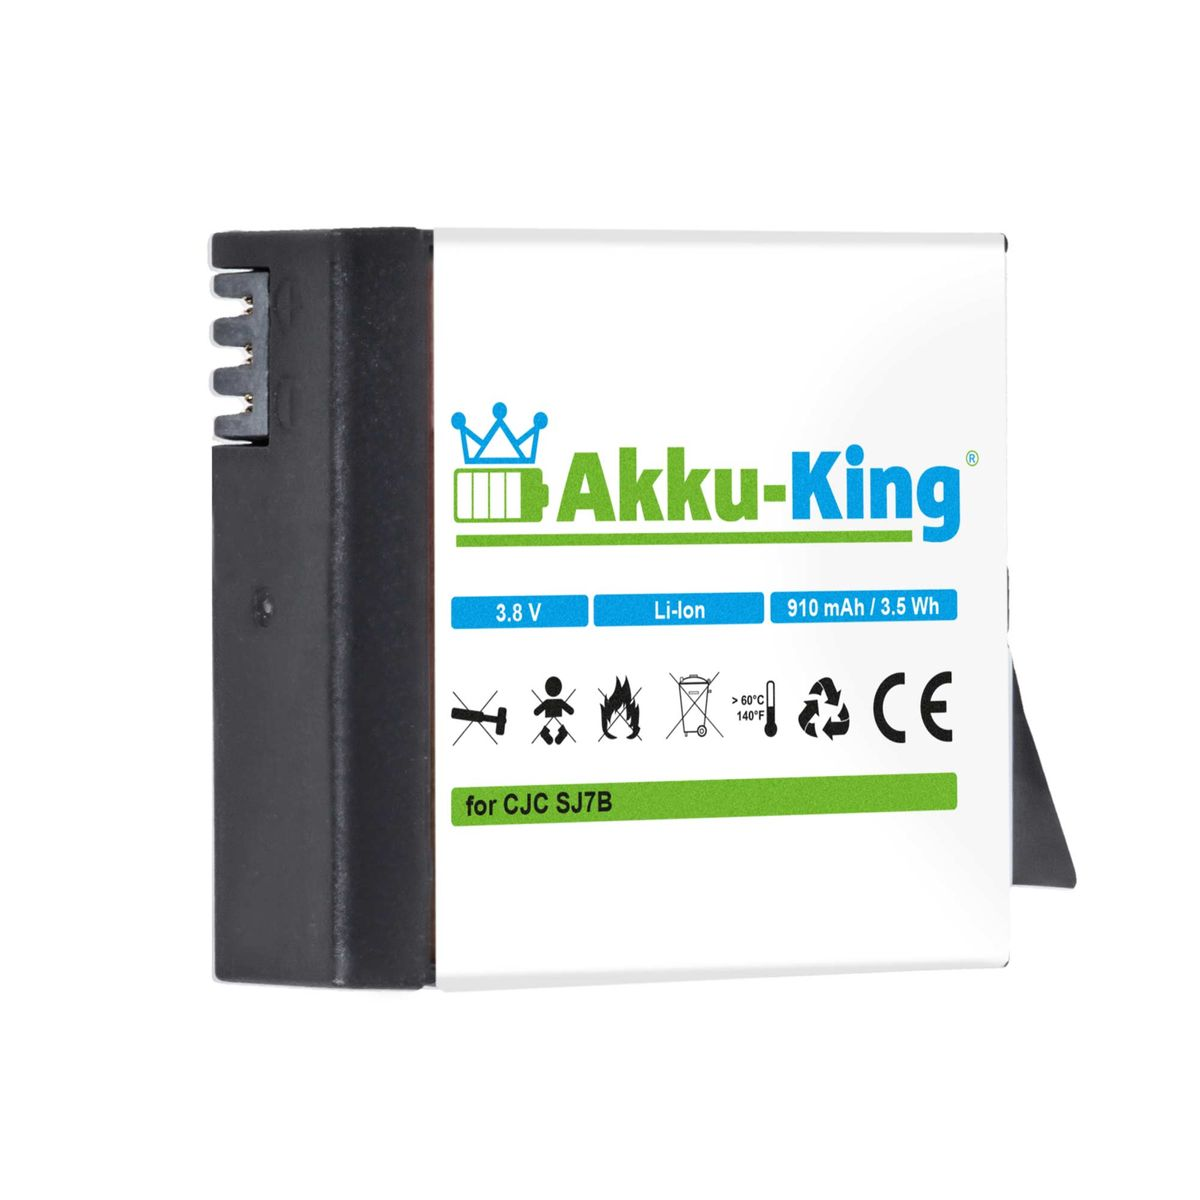 AKKU-KING Akku kompatibel mit SJCAM 910mAh Li-Ion Kamera-Akku, 3.8 Volt, SJ7B